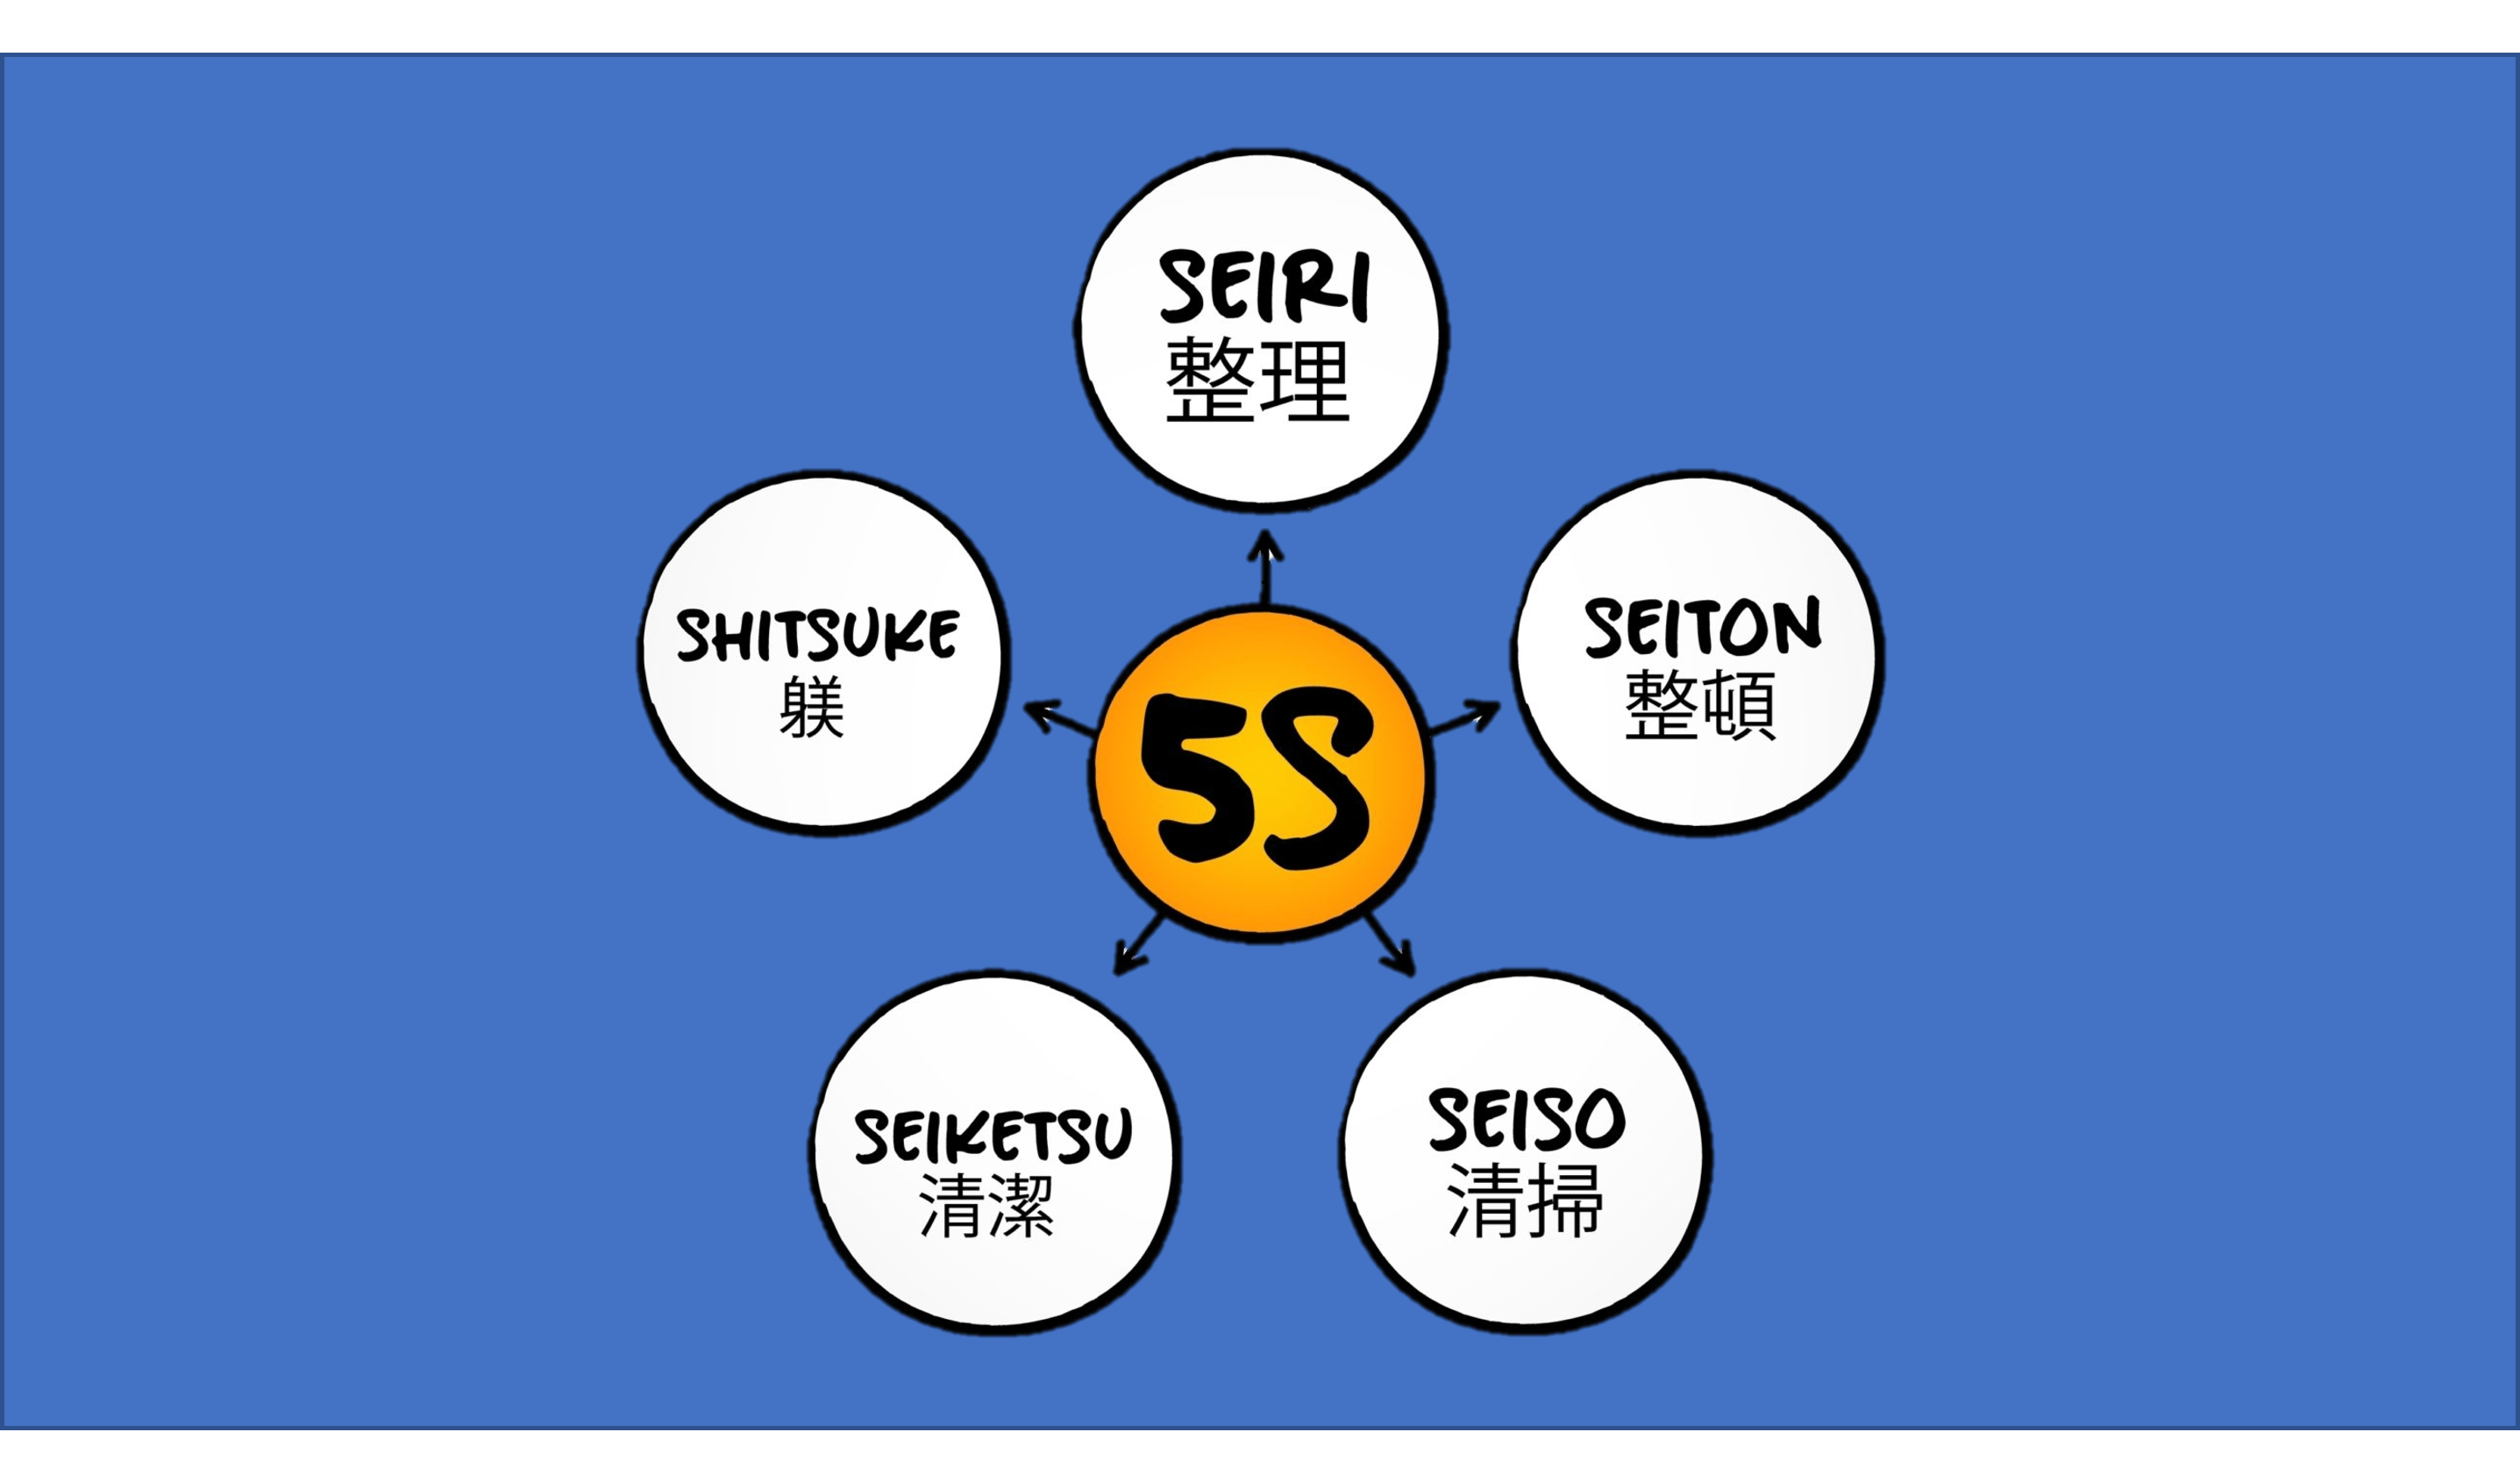 Imagem com o nome dos 5s escritos em japonês